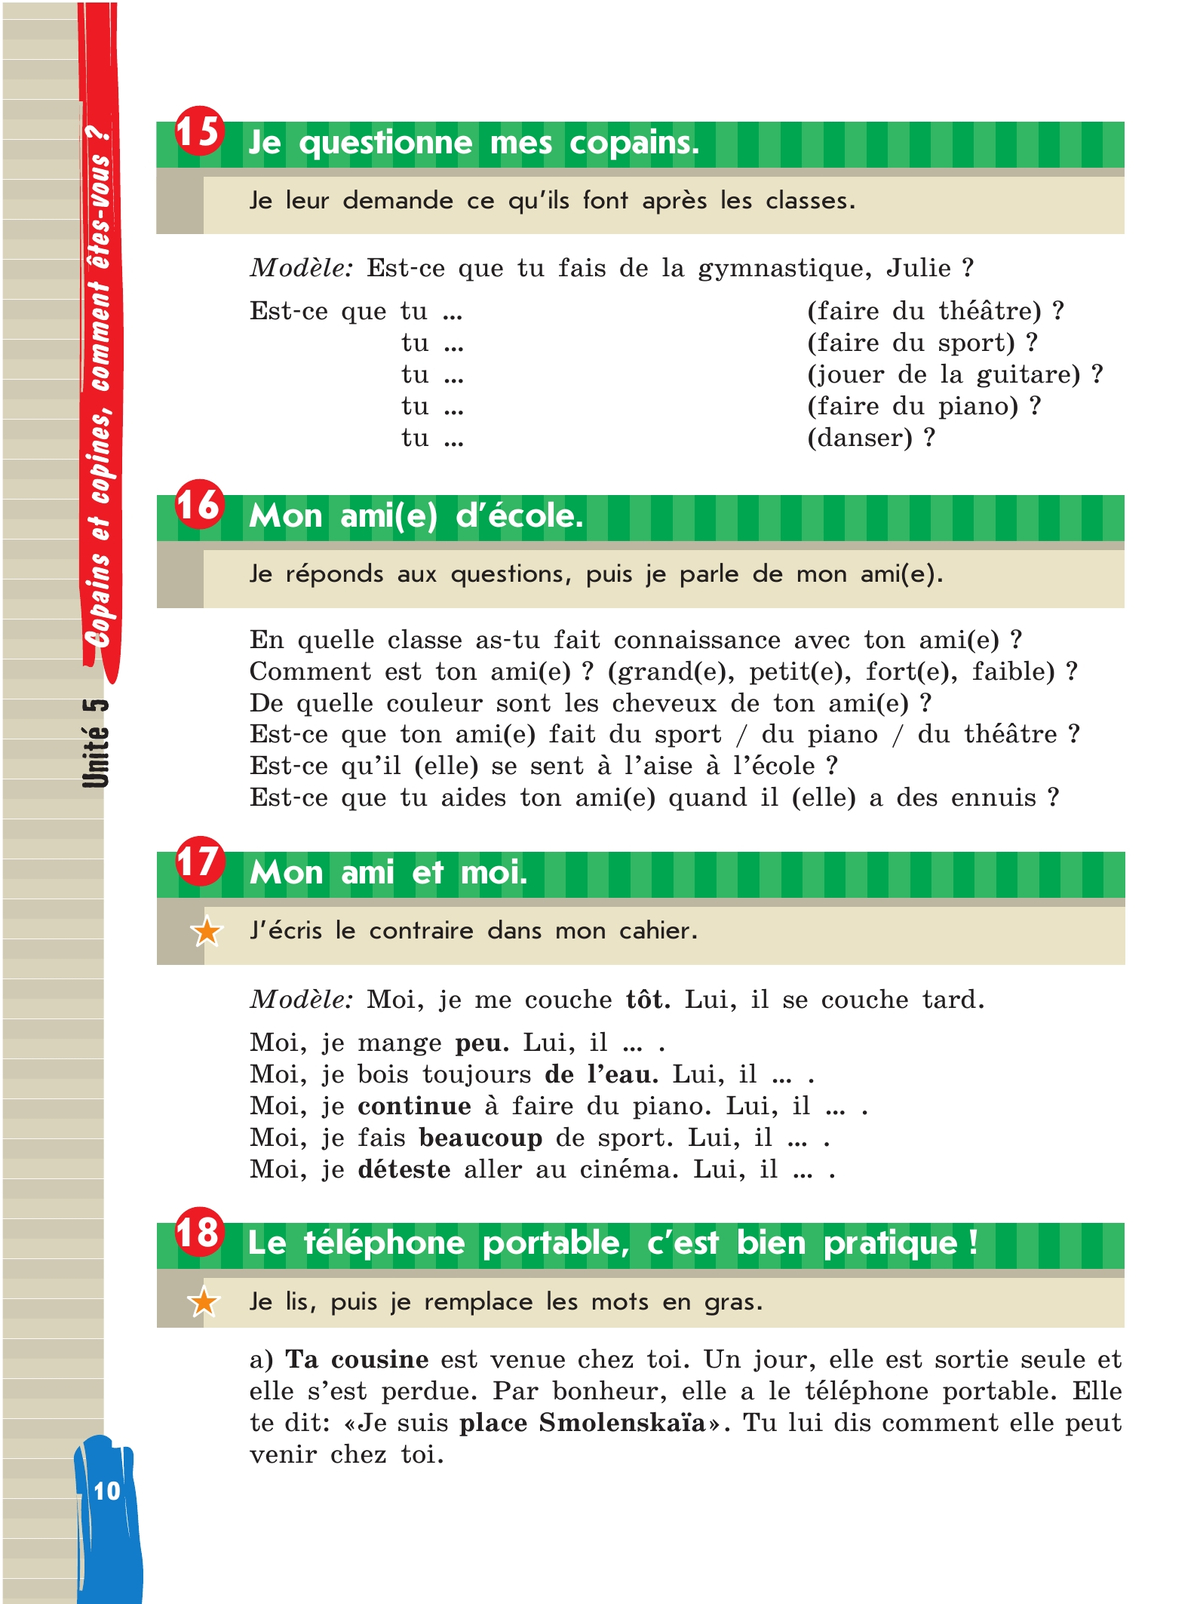 Французский язык. 5 класс. Учебник. В 2 ч. Часть 2 11